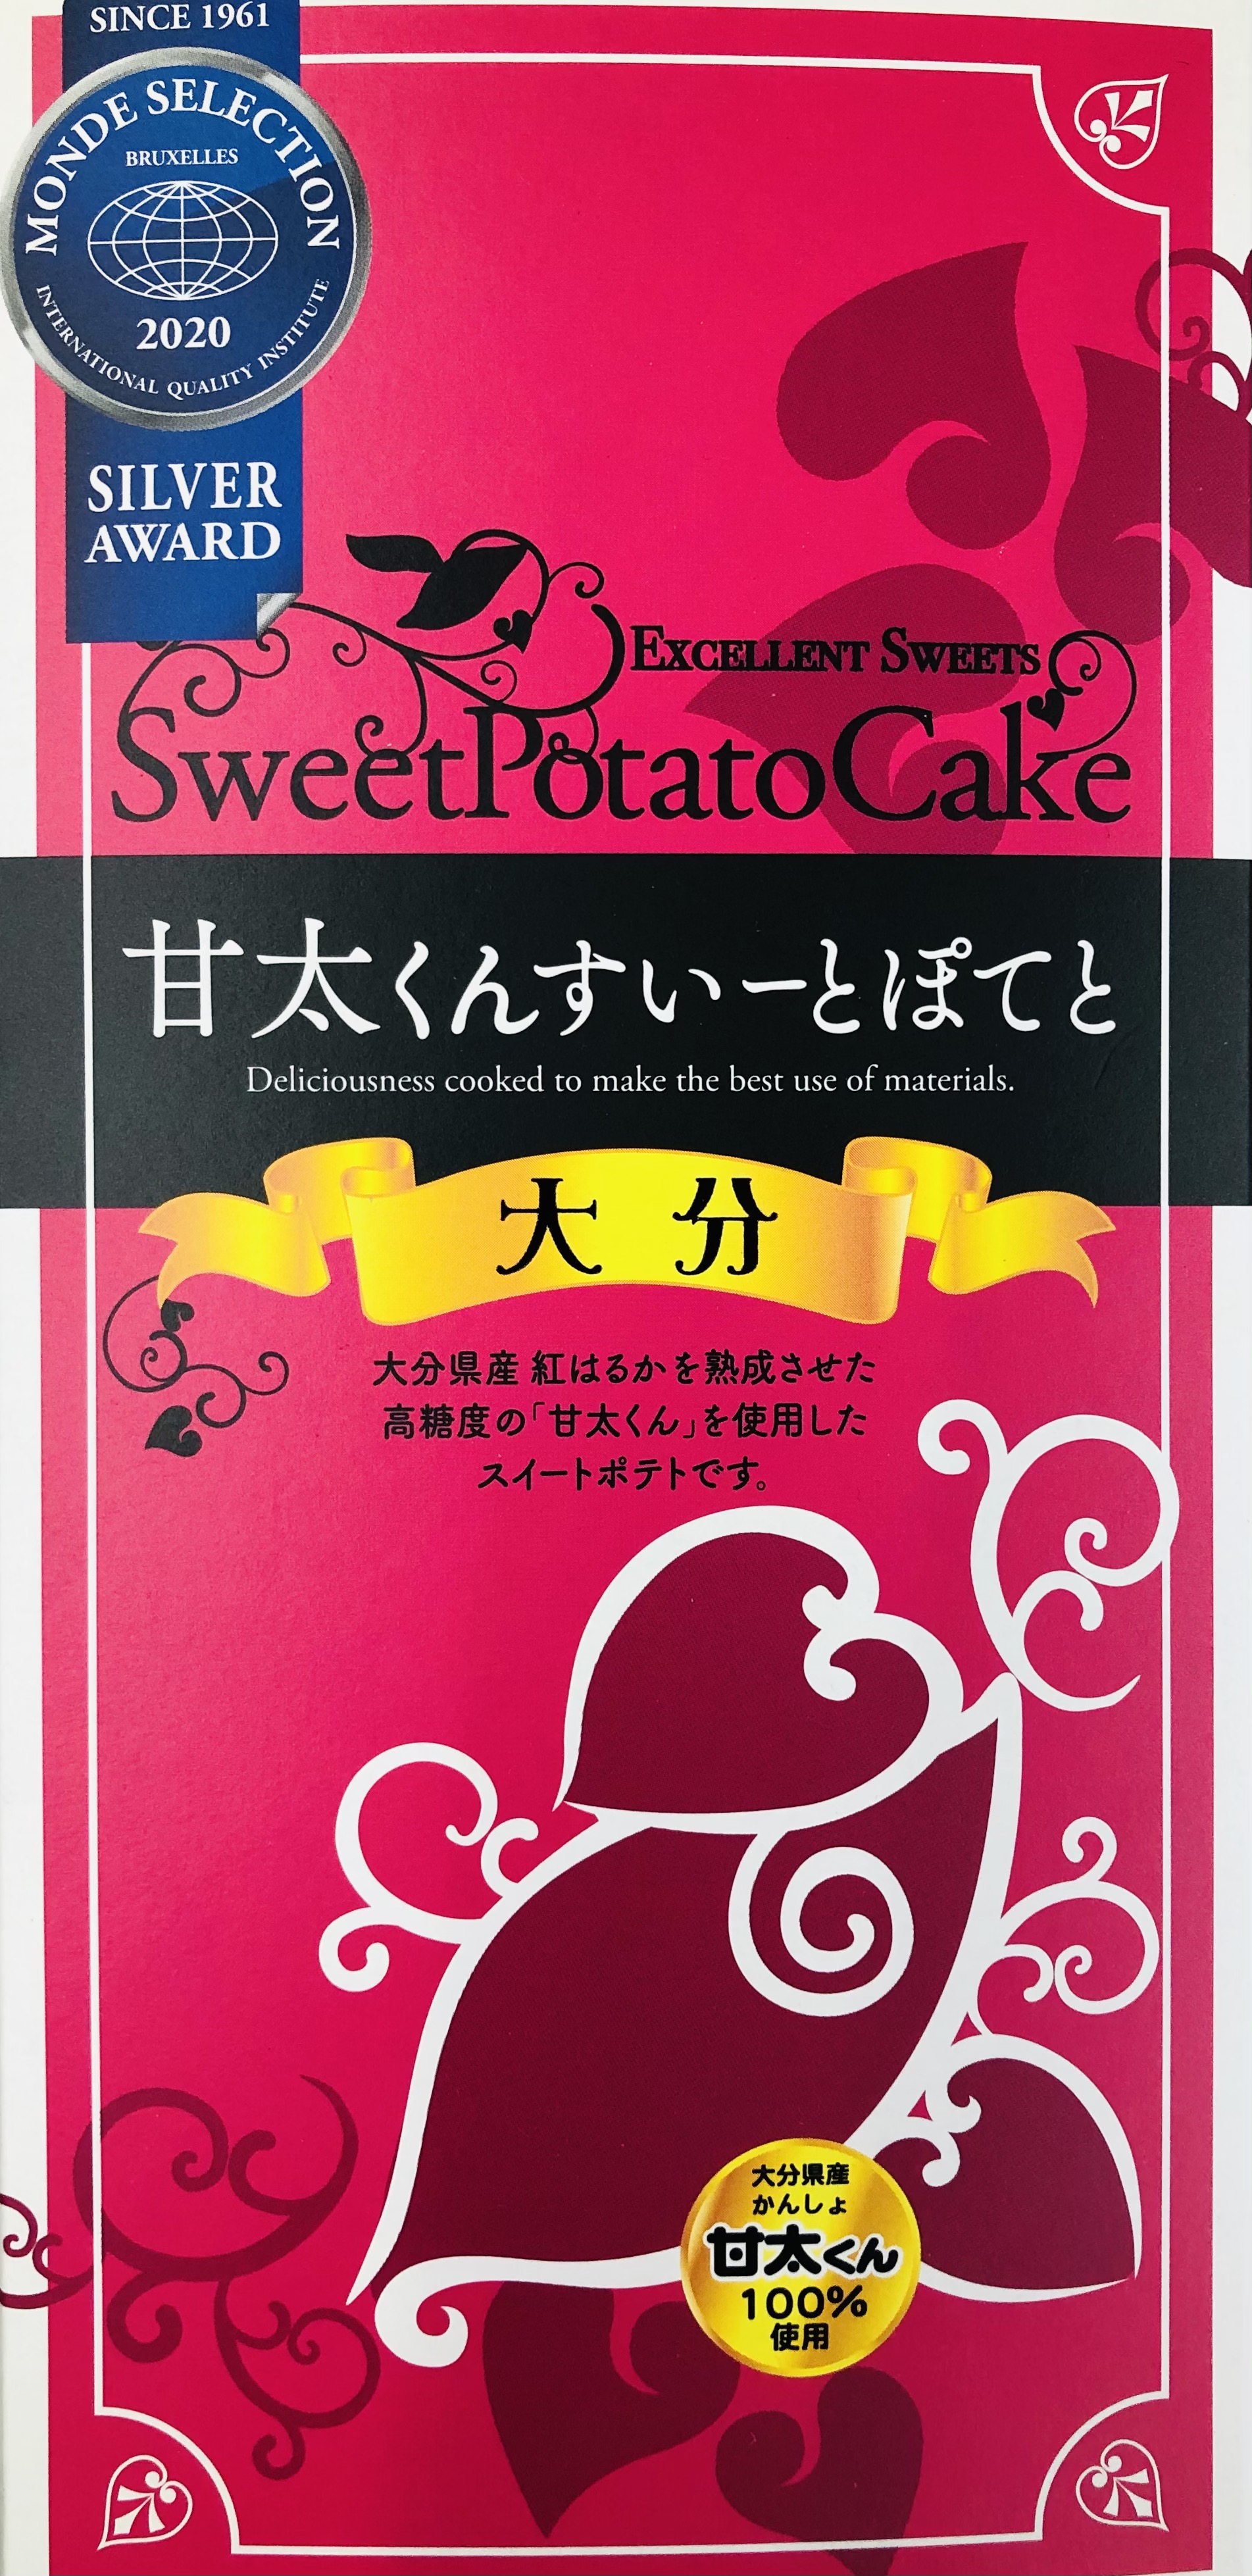 甘太のすいーとぽてと(Kanta kun sweet potato)｜由布院でお土産を買うなら菓子工房五衛門へ